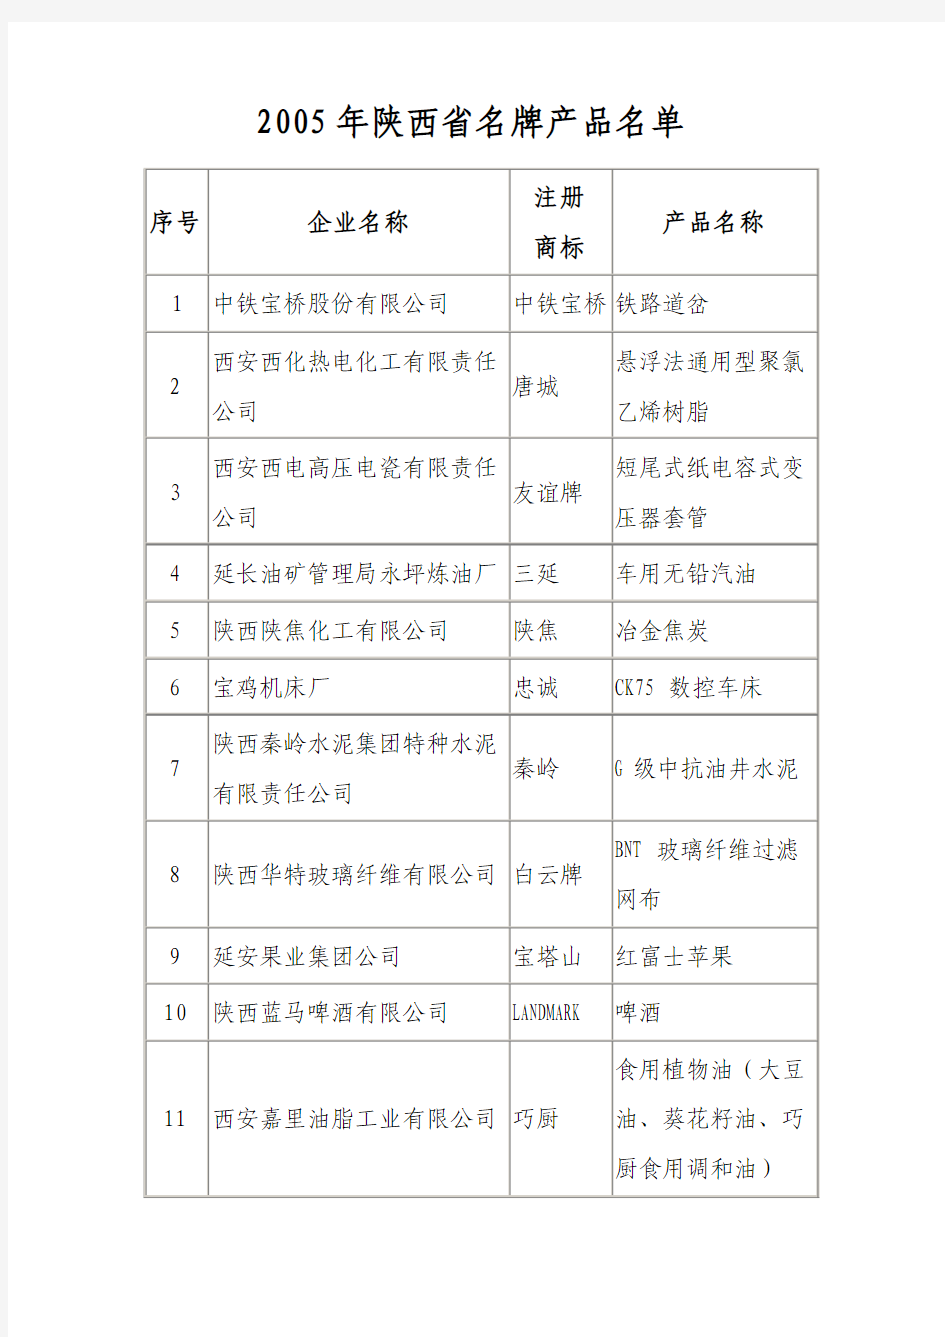 2005年陕西省名牌产品名单